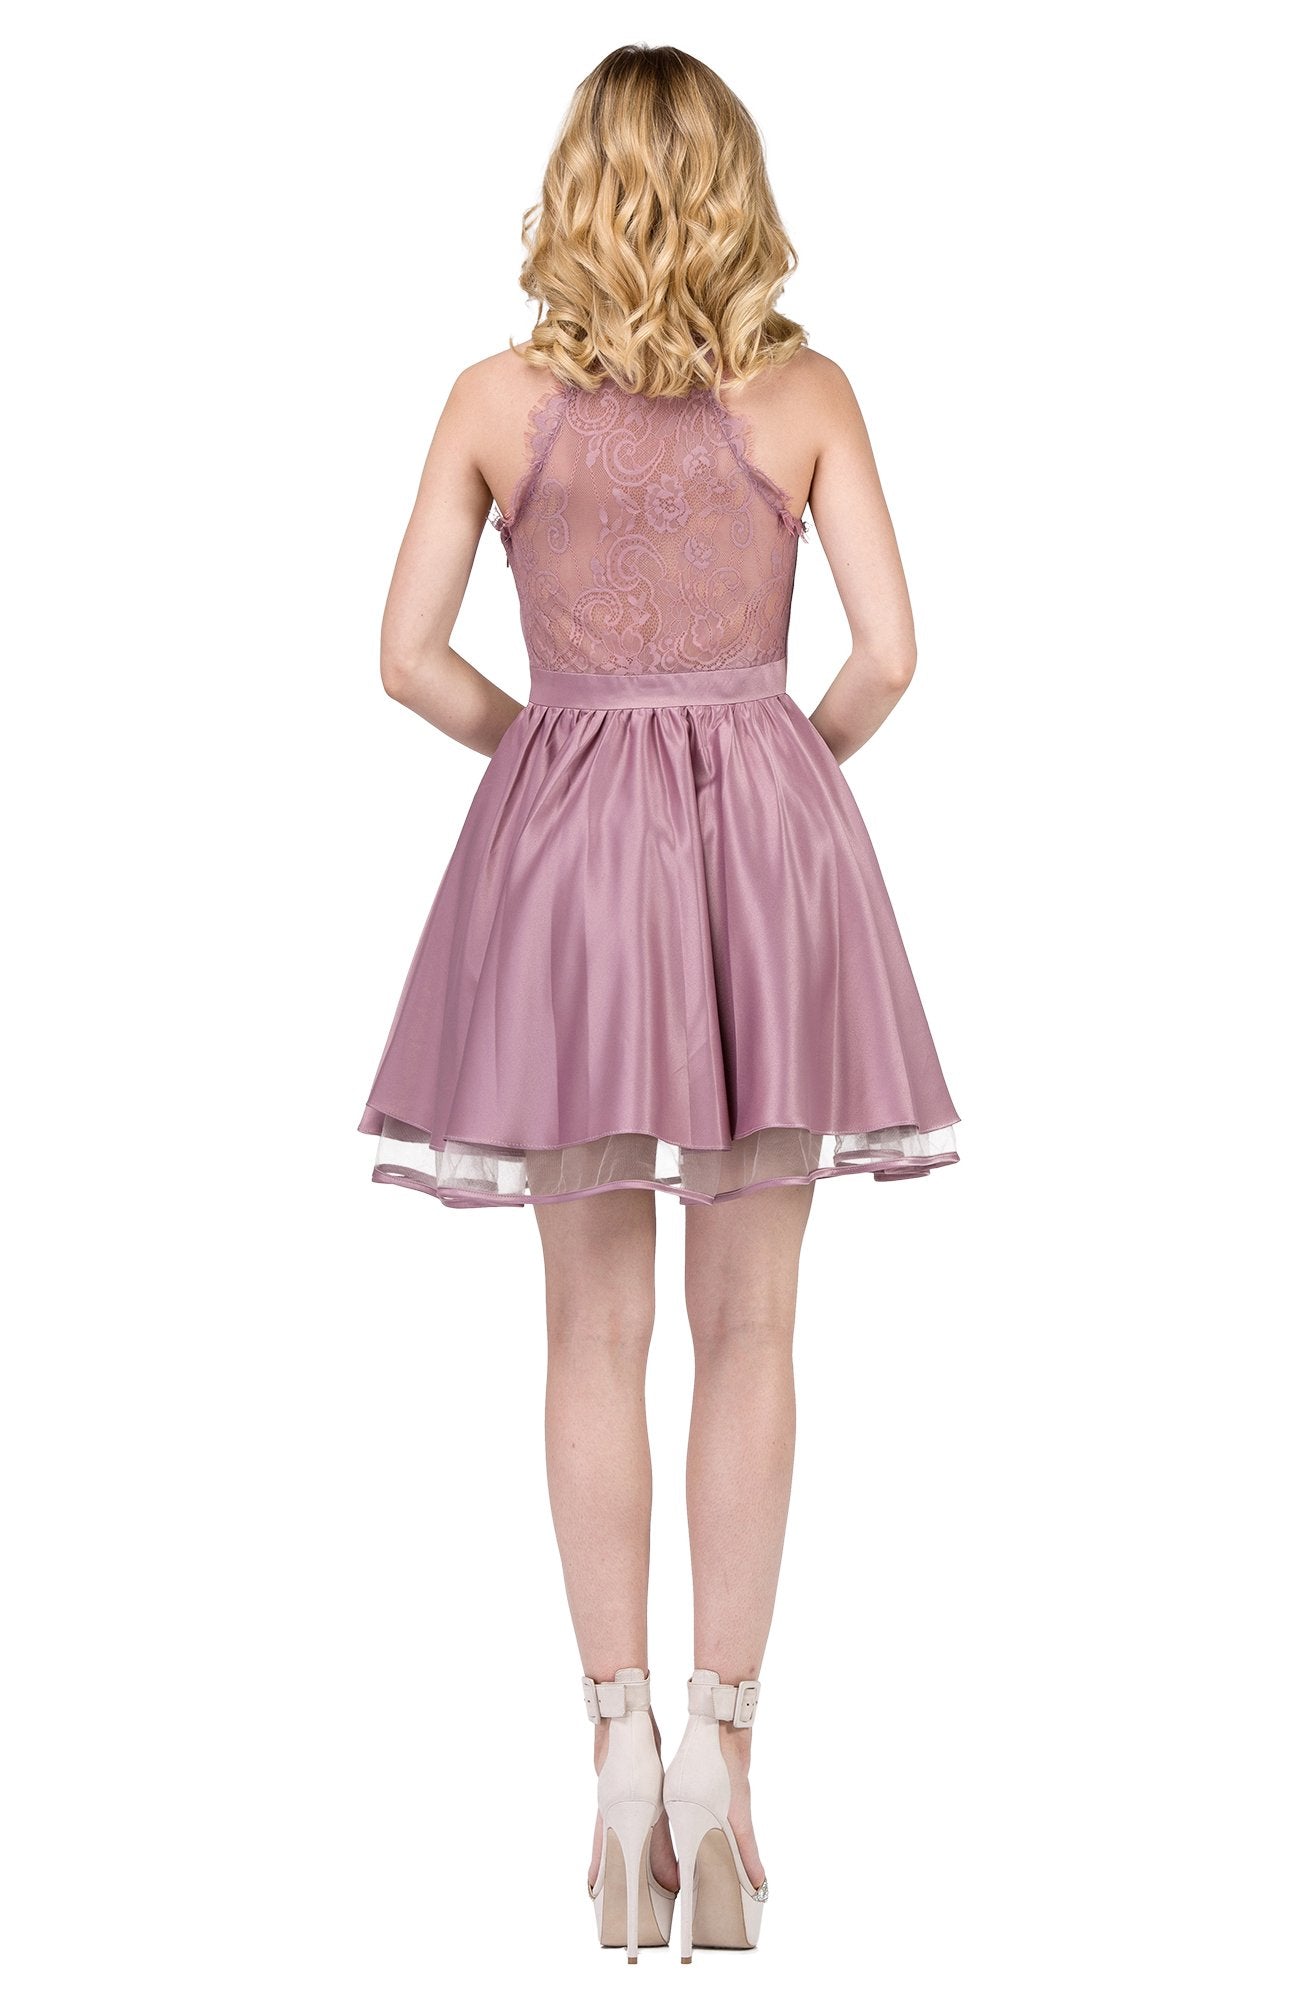 Dancing Queen - 9836 Sleeveless Sheer-Trimmed A-Line Dress